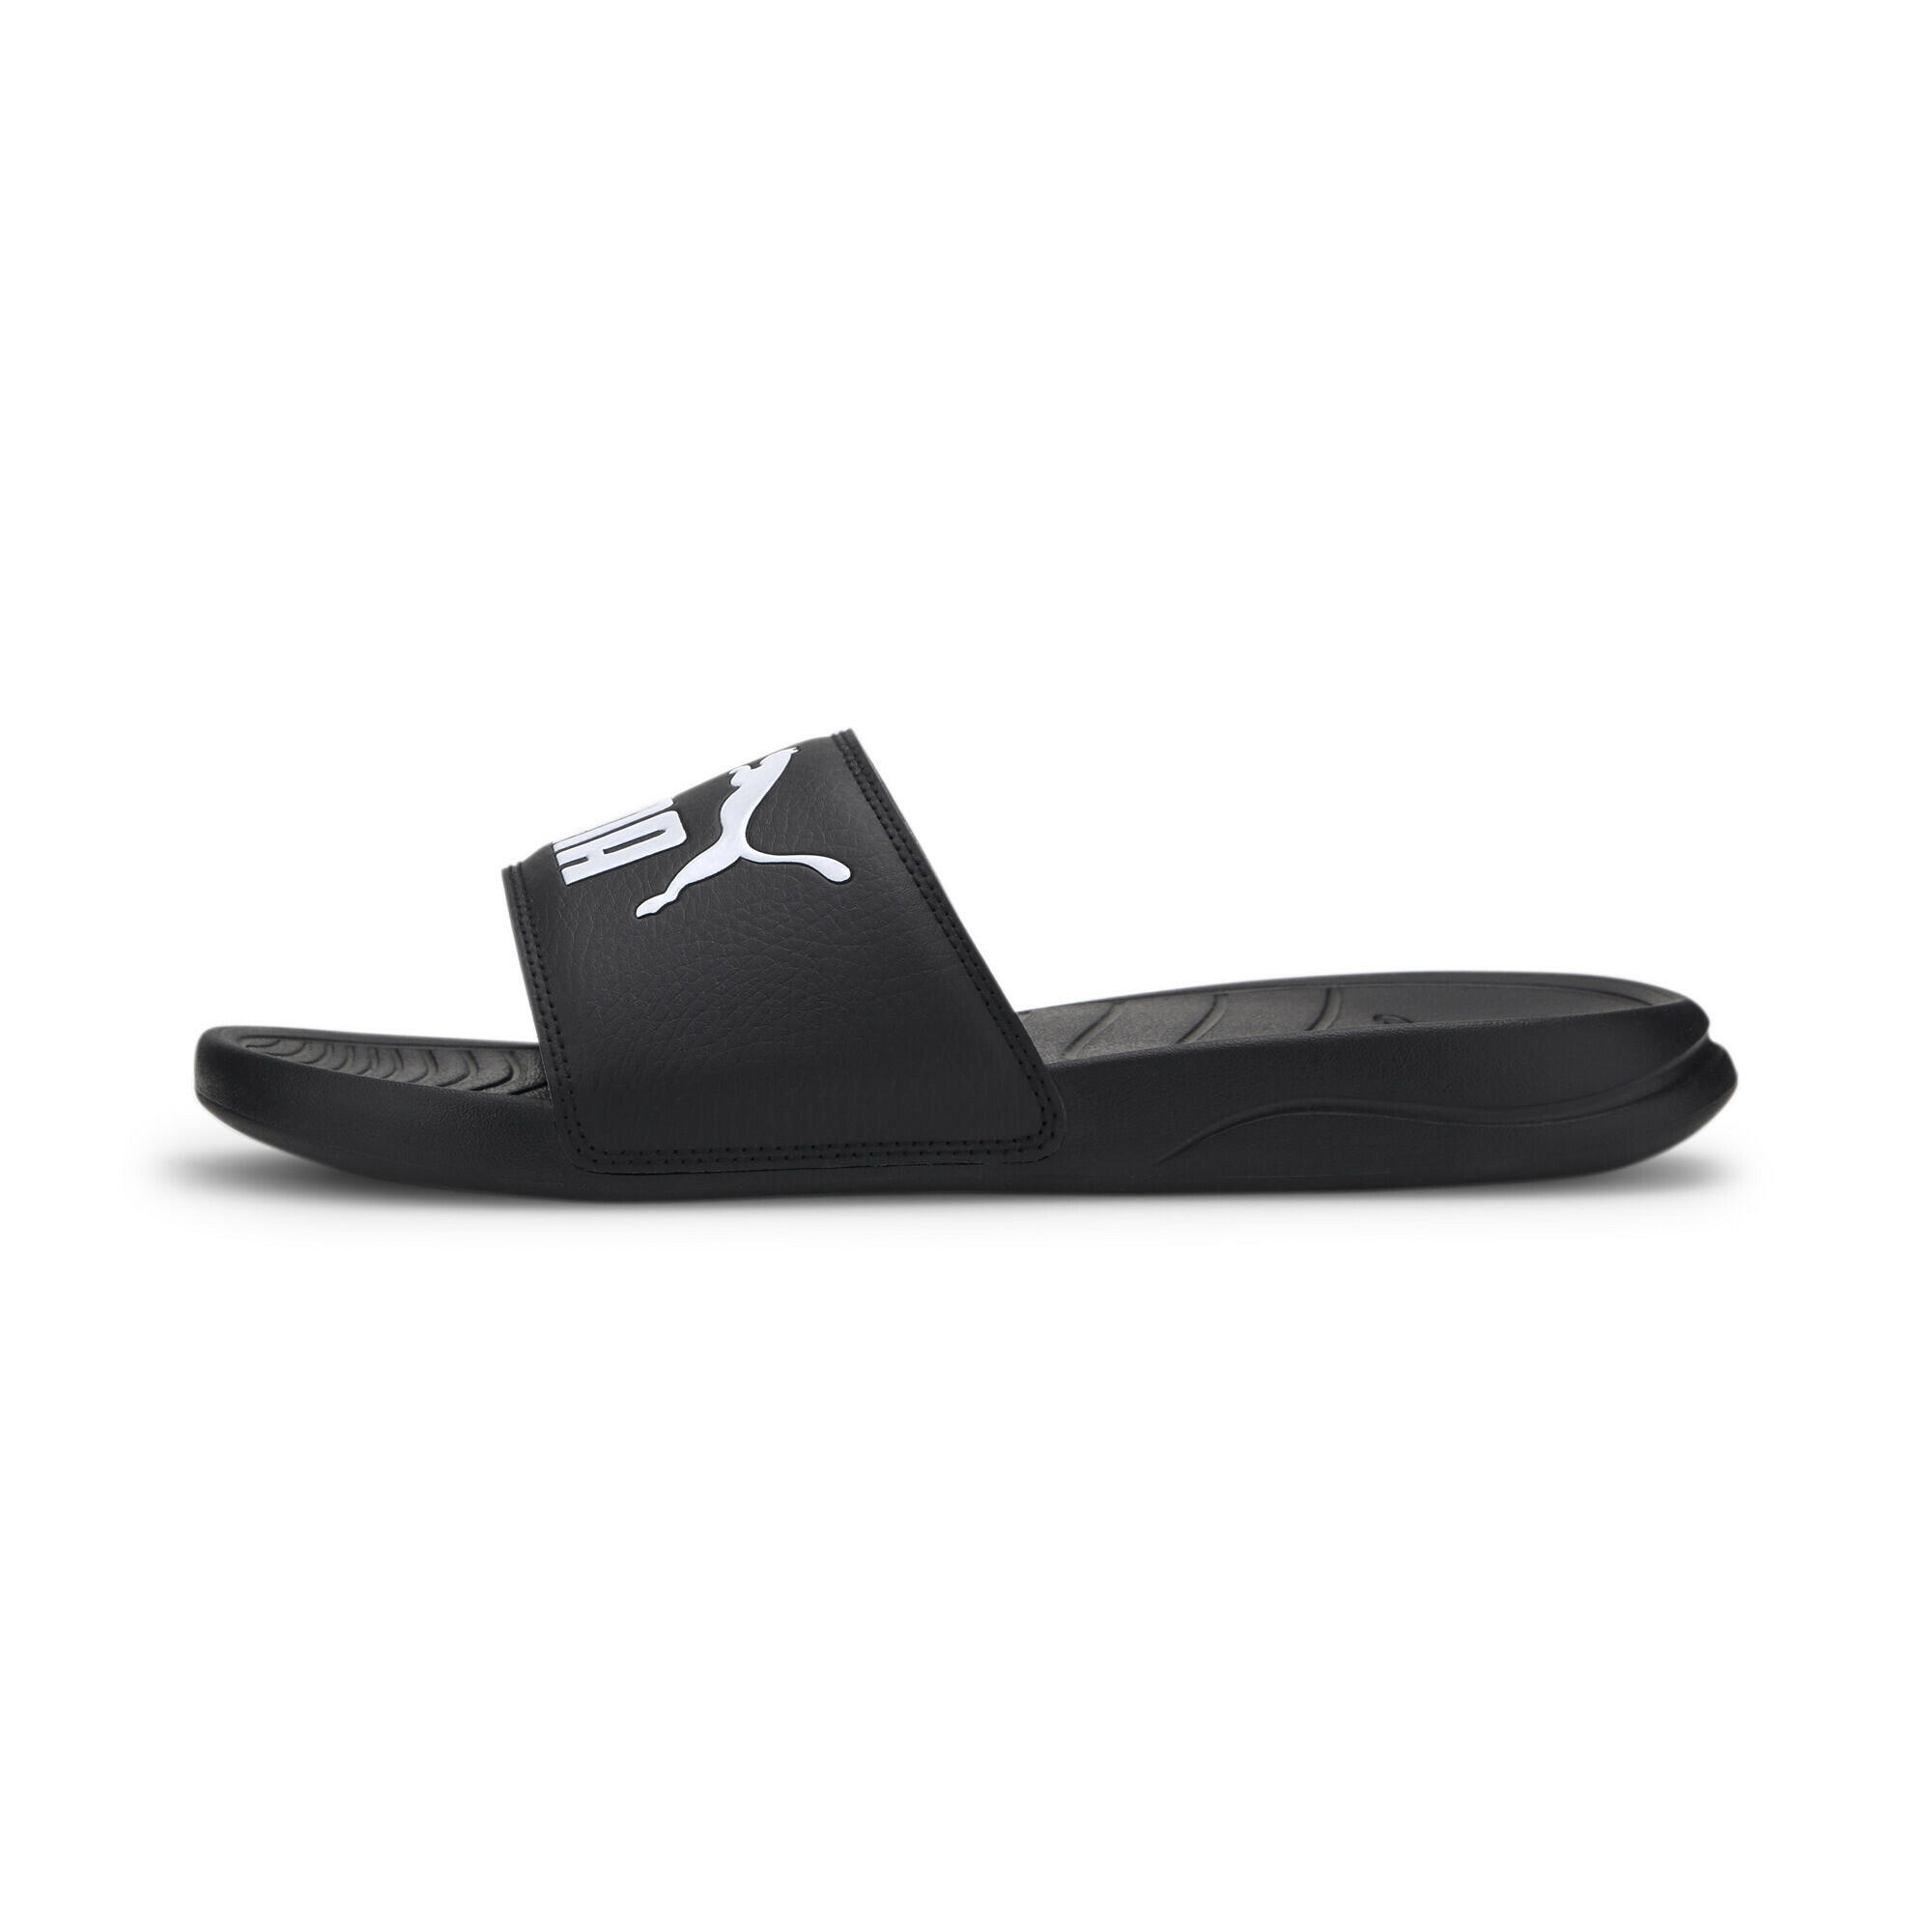 PUMA Unisex Popcat 20 Sandals - Black-Black-White 4/7